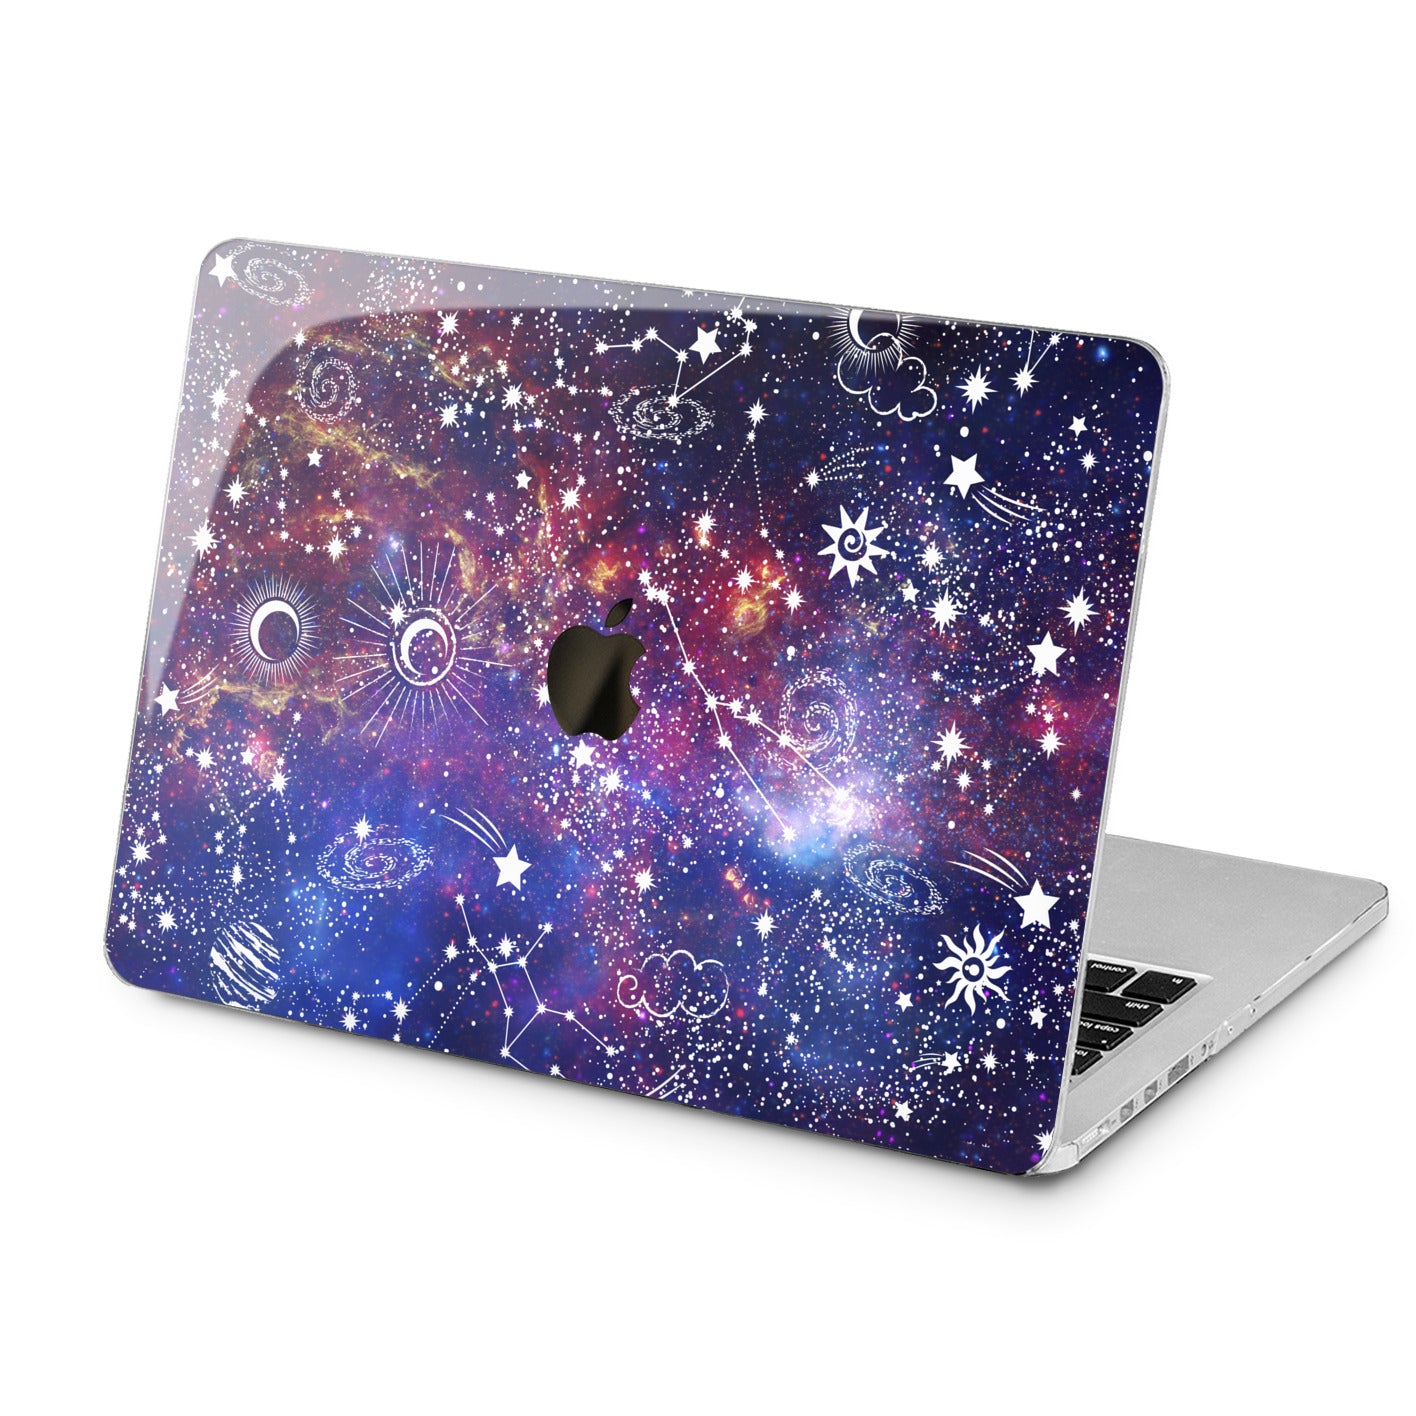 Lex Altern Lex Altern Purple Constellation Case for your Laptop Apple Macbook.